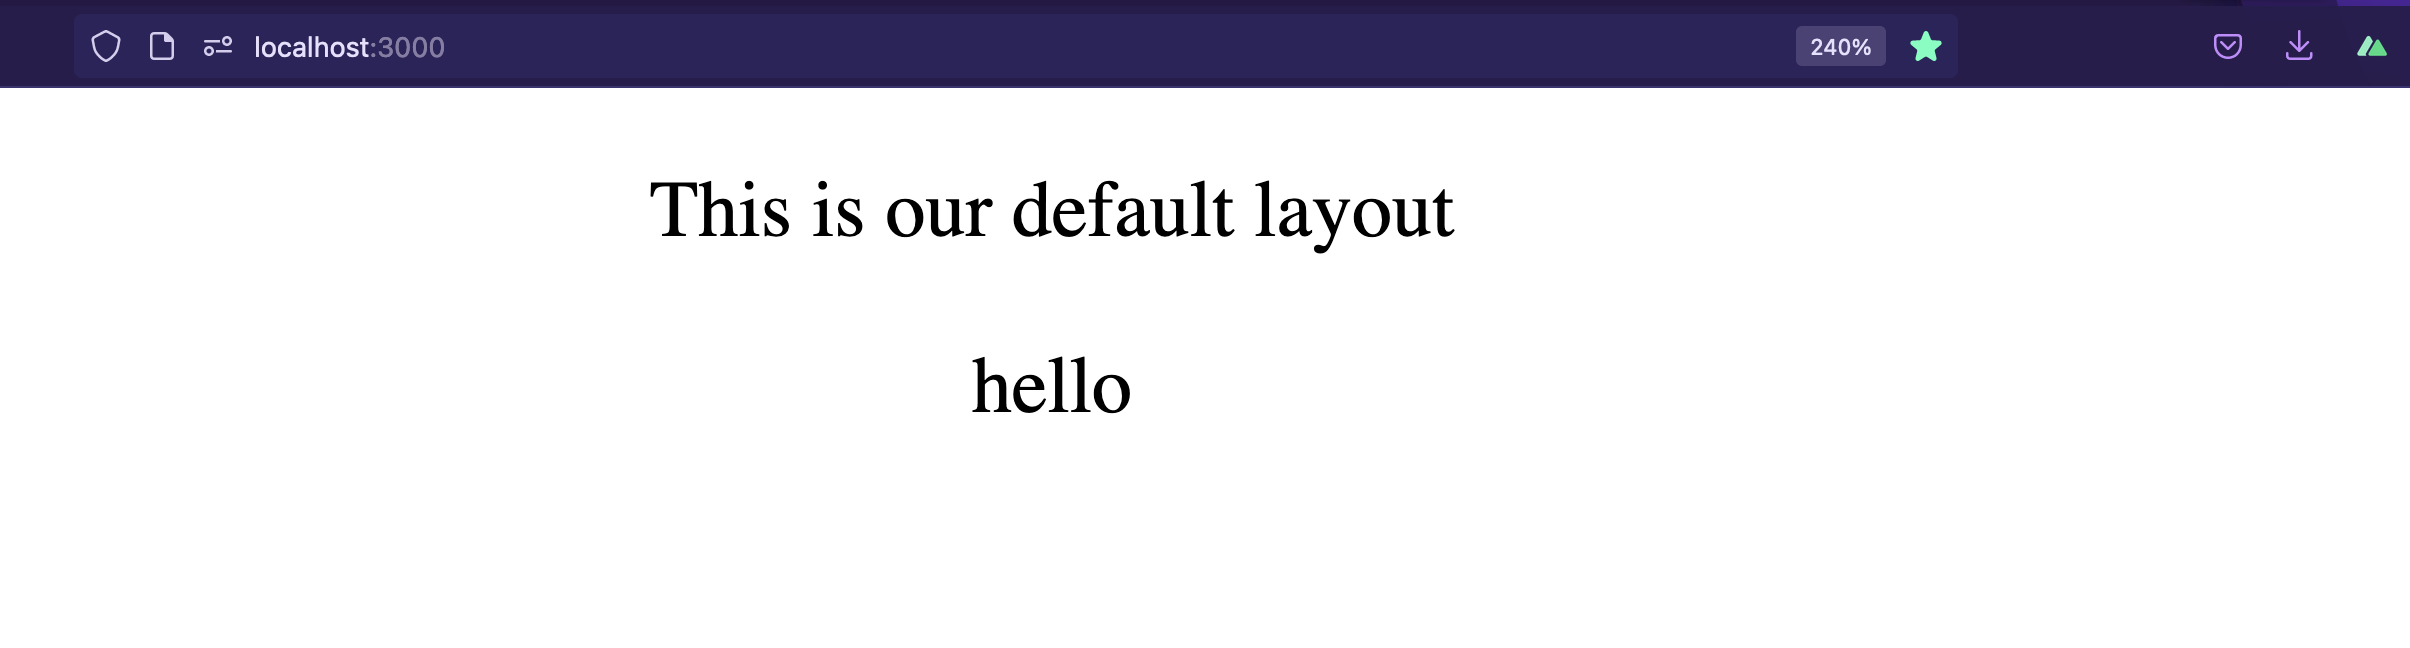 default-layout